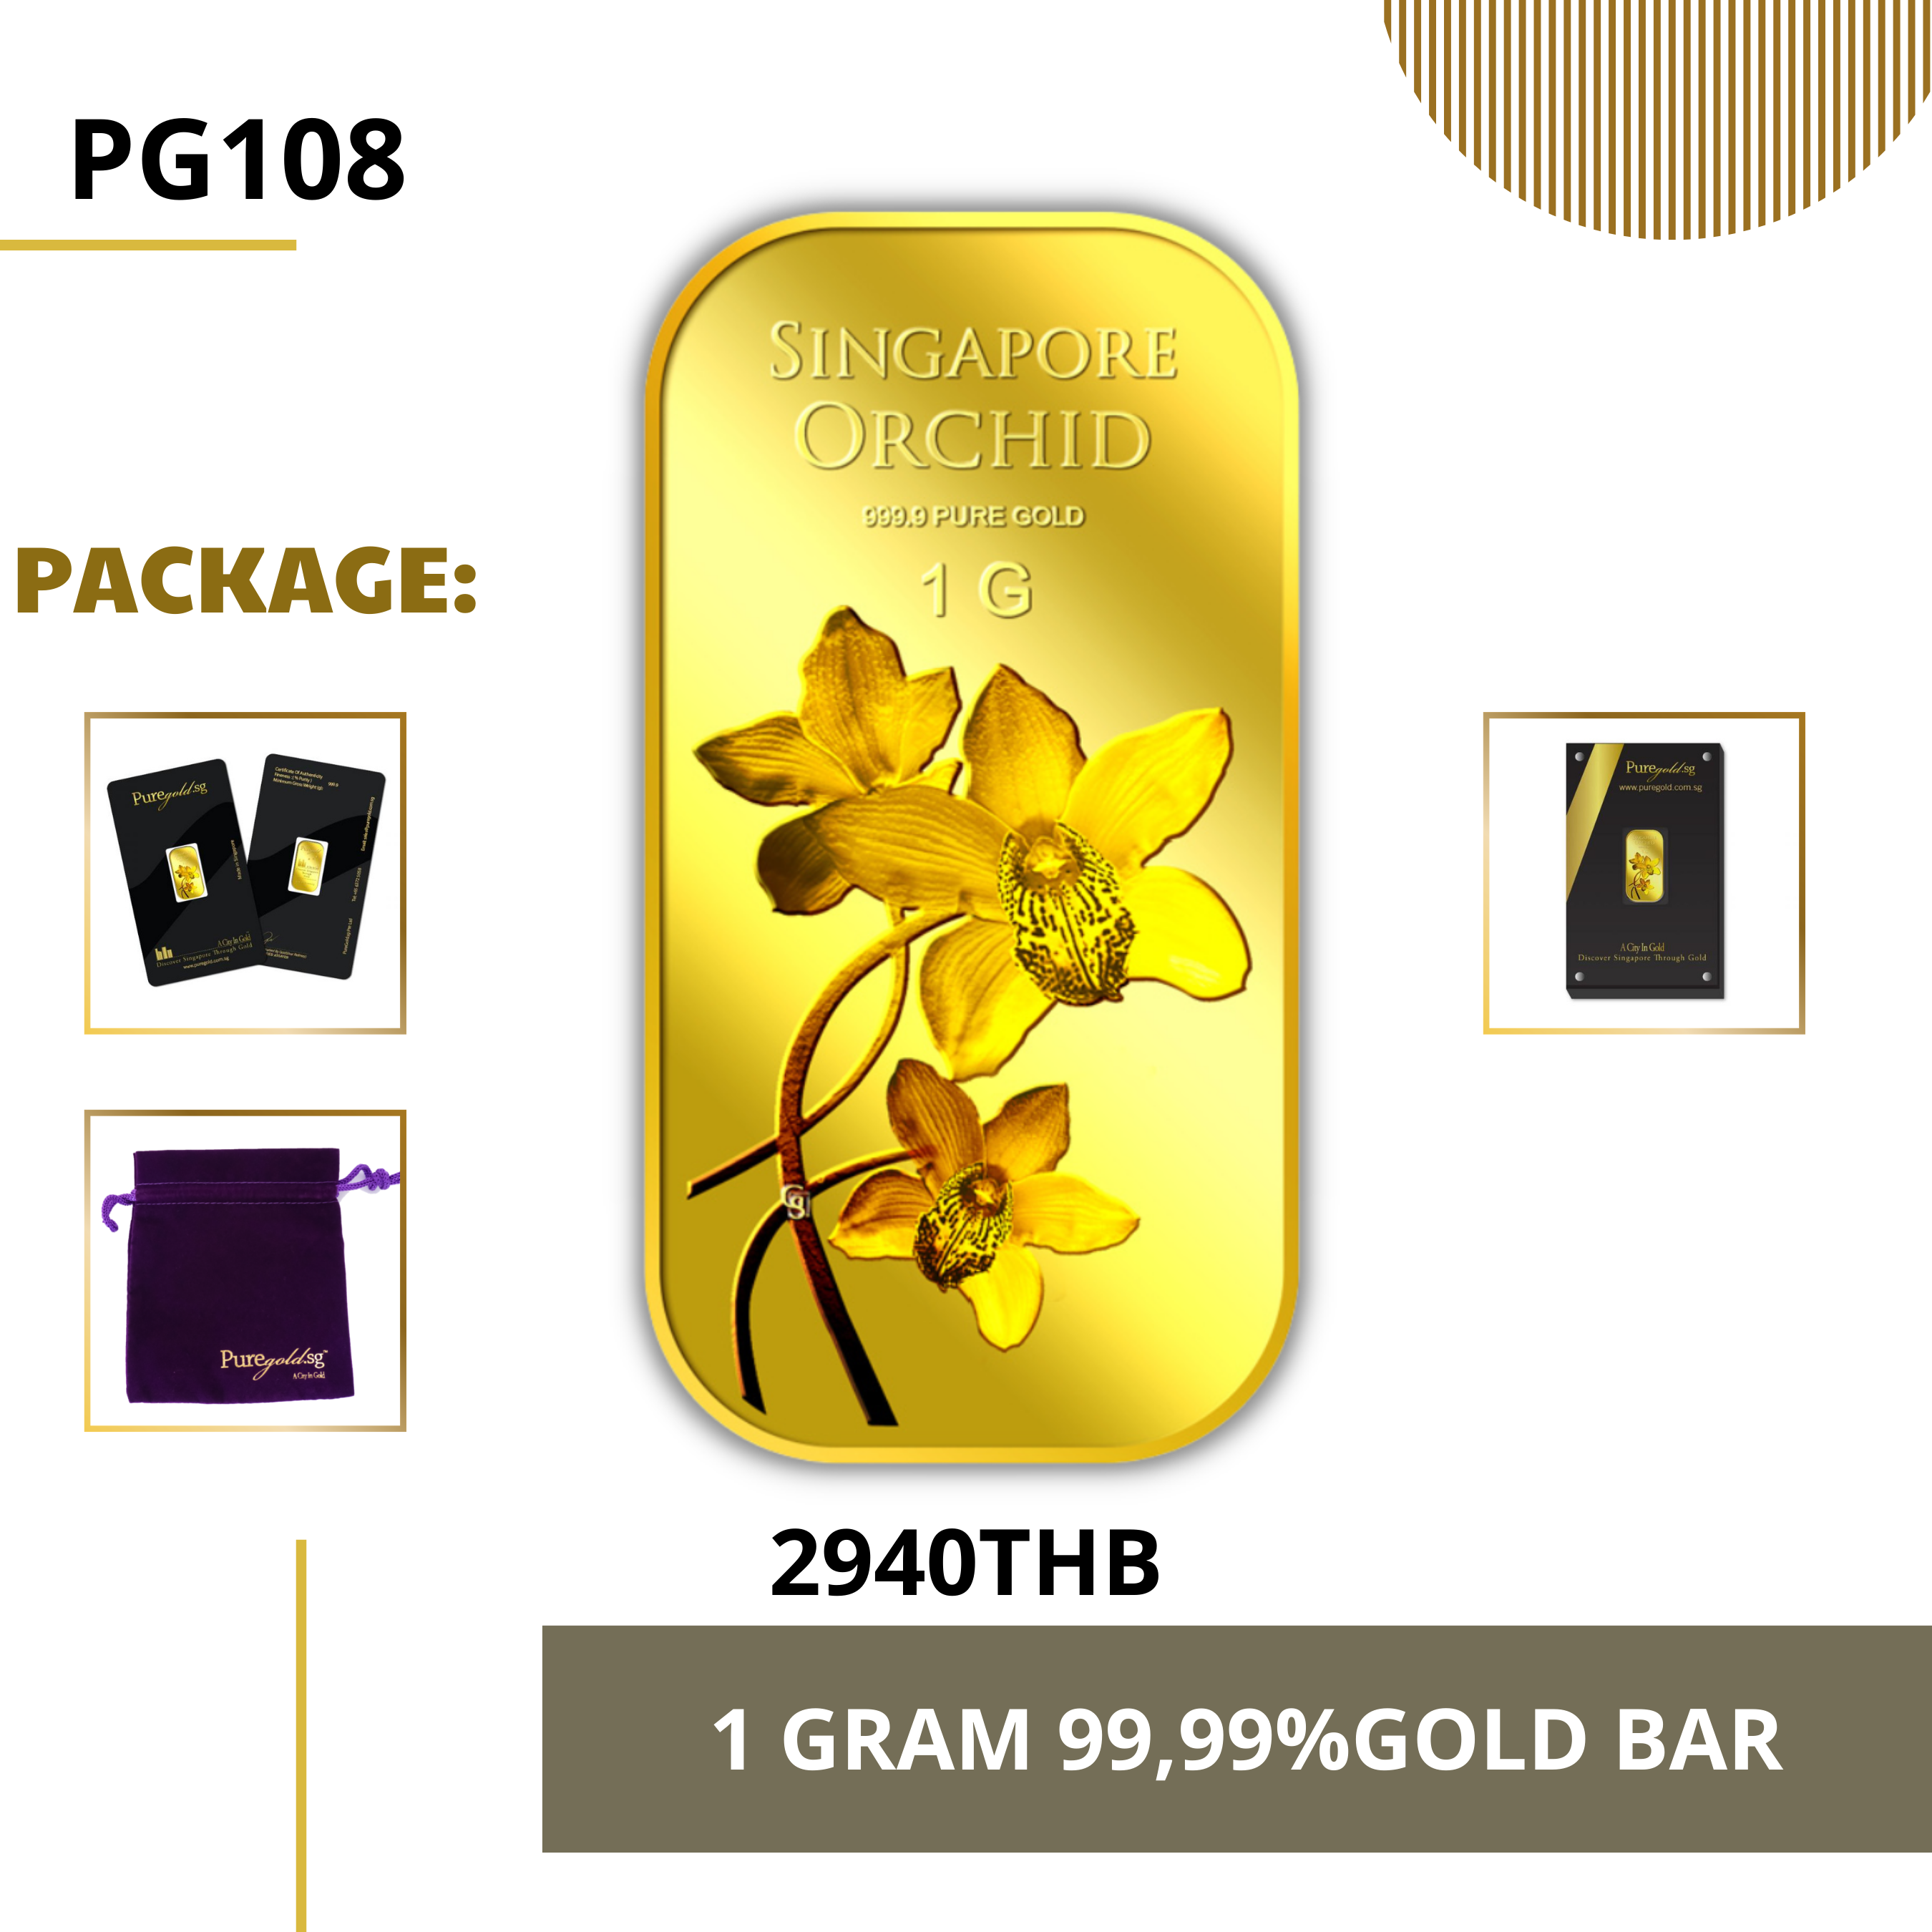 PURE GOLD 99.99% ทองคำแท่ง / Orchid Singapore Series 2 gold bar/ ทองคำแท้จากสิงคโปร์ / ทองคำ 1 กรัม / ทอง 99.99% *การันตีทองแท้*